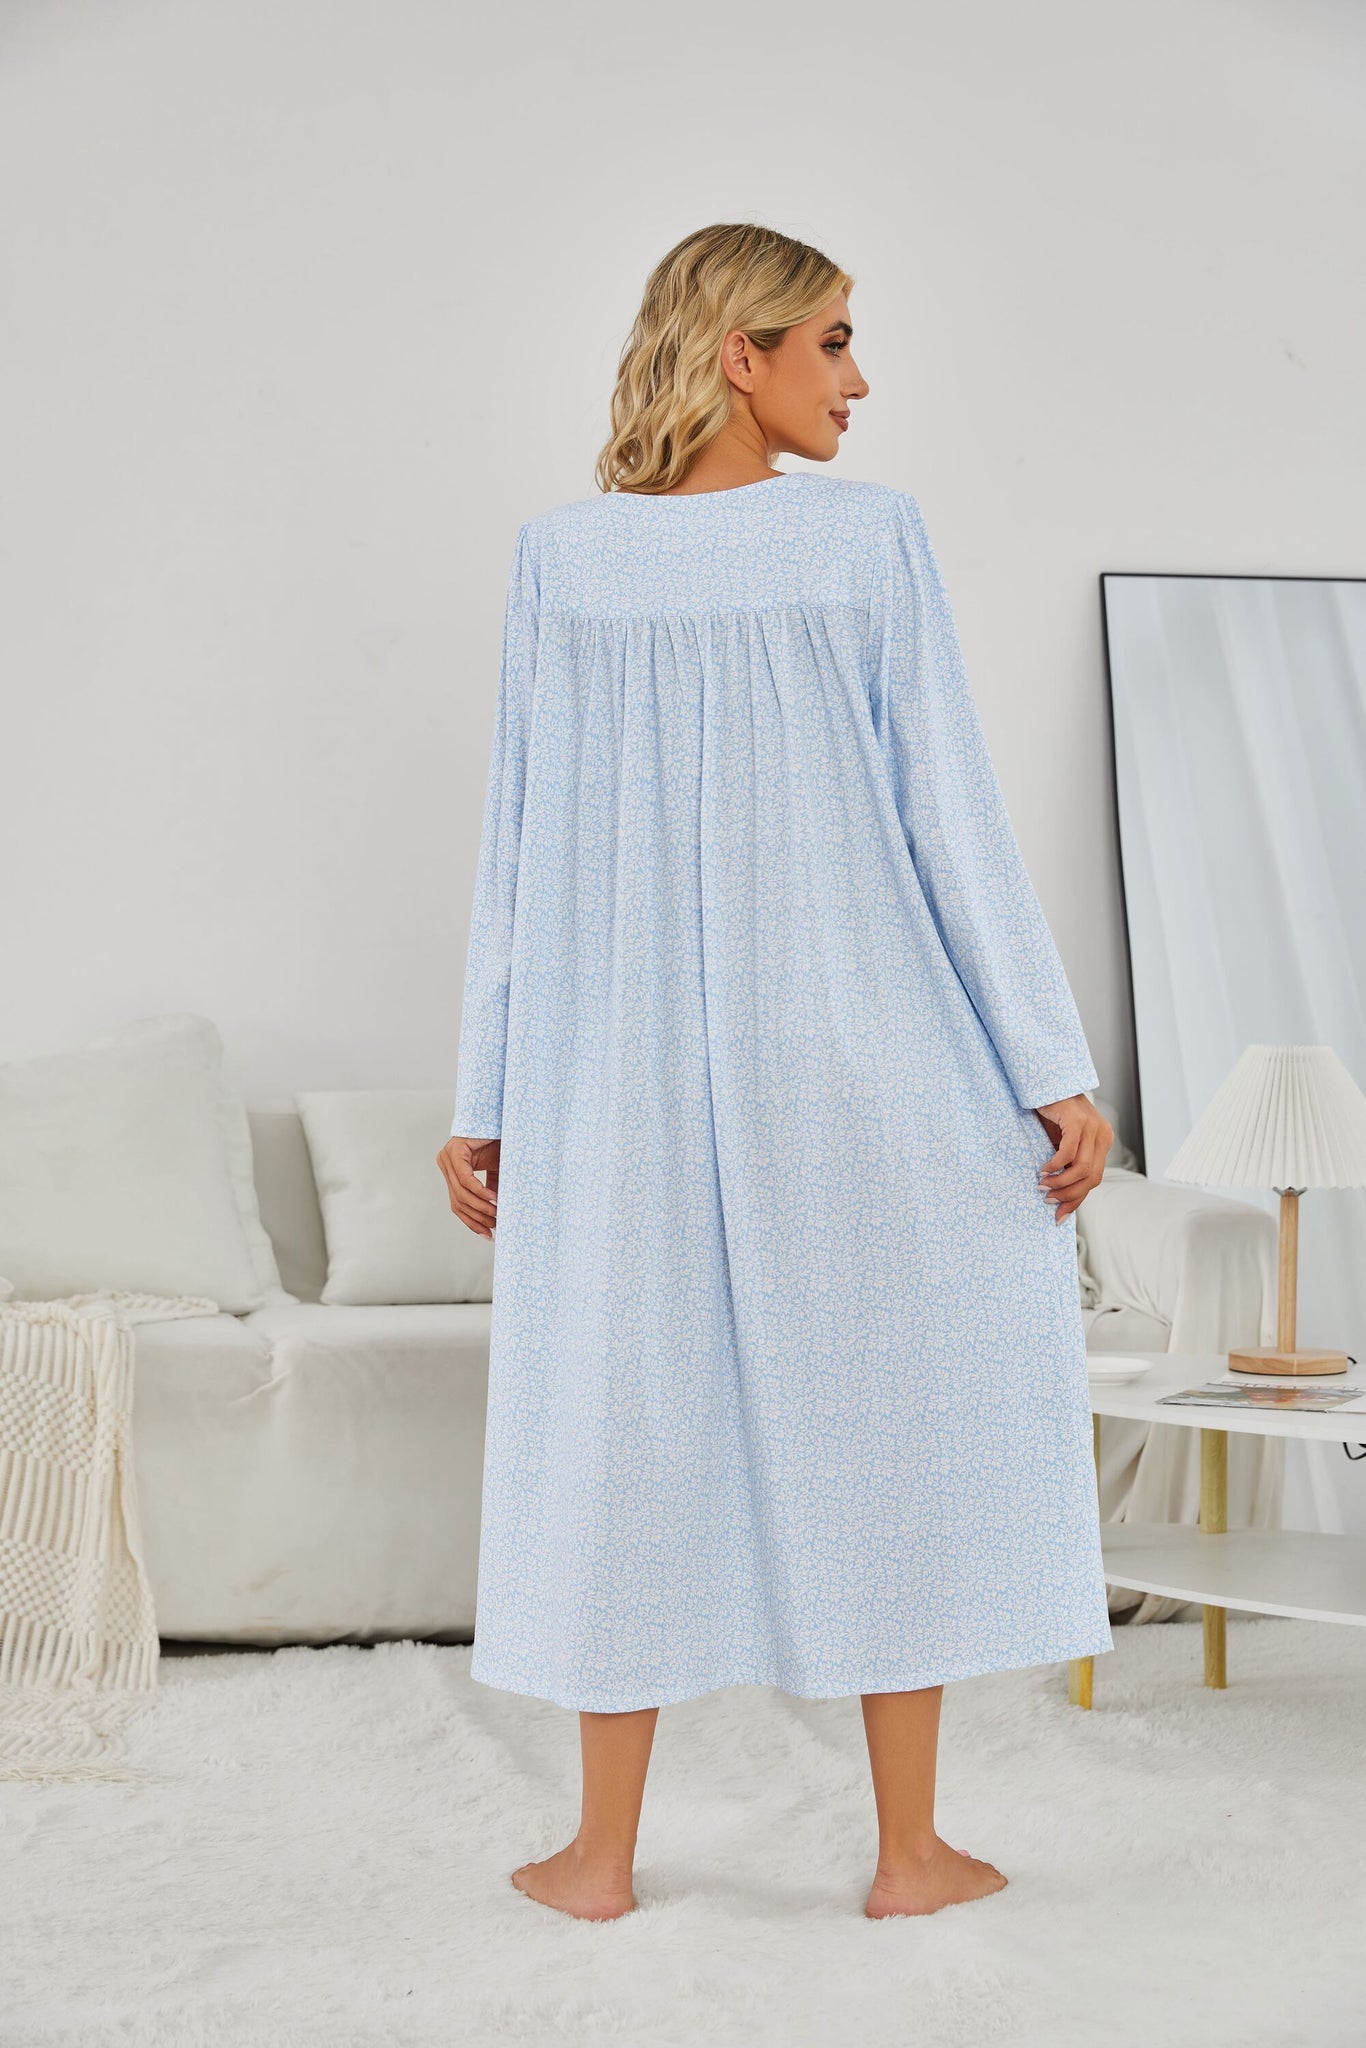 Richie House RH Nightgown Women's Long Sleeve Sleepwear Full